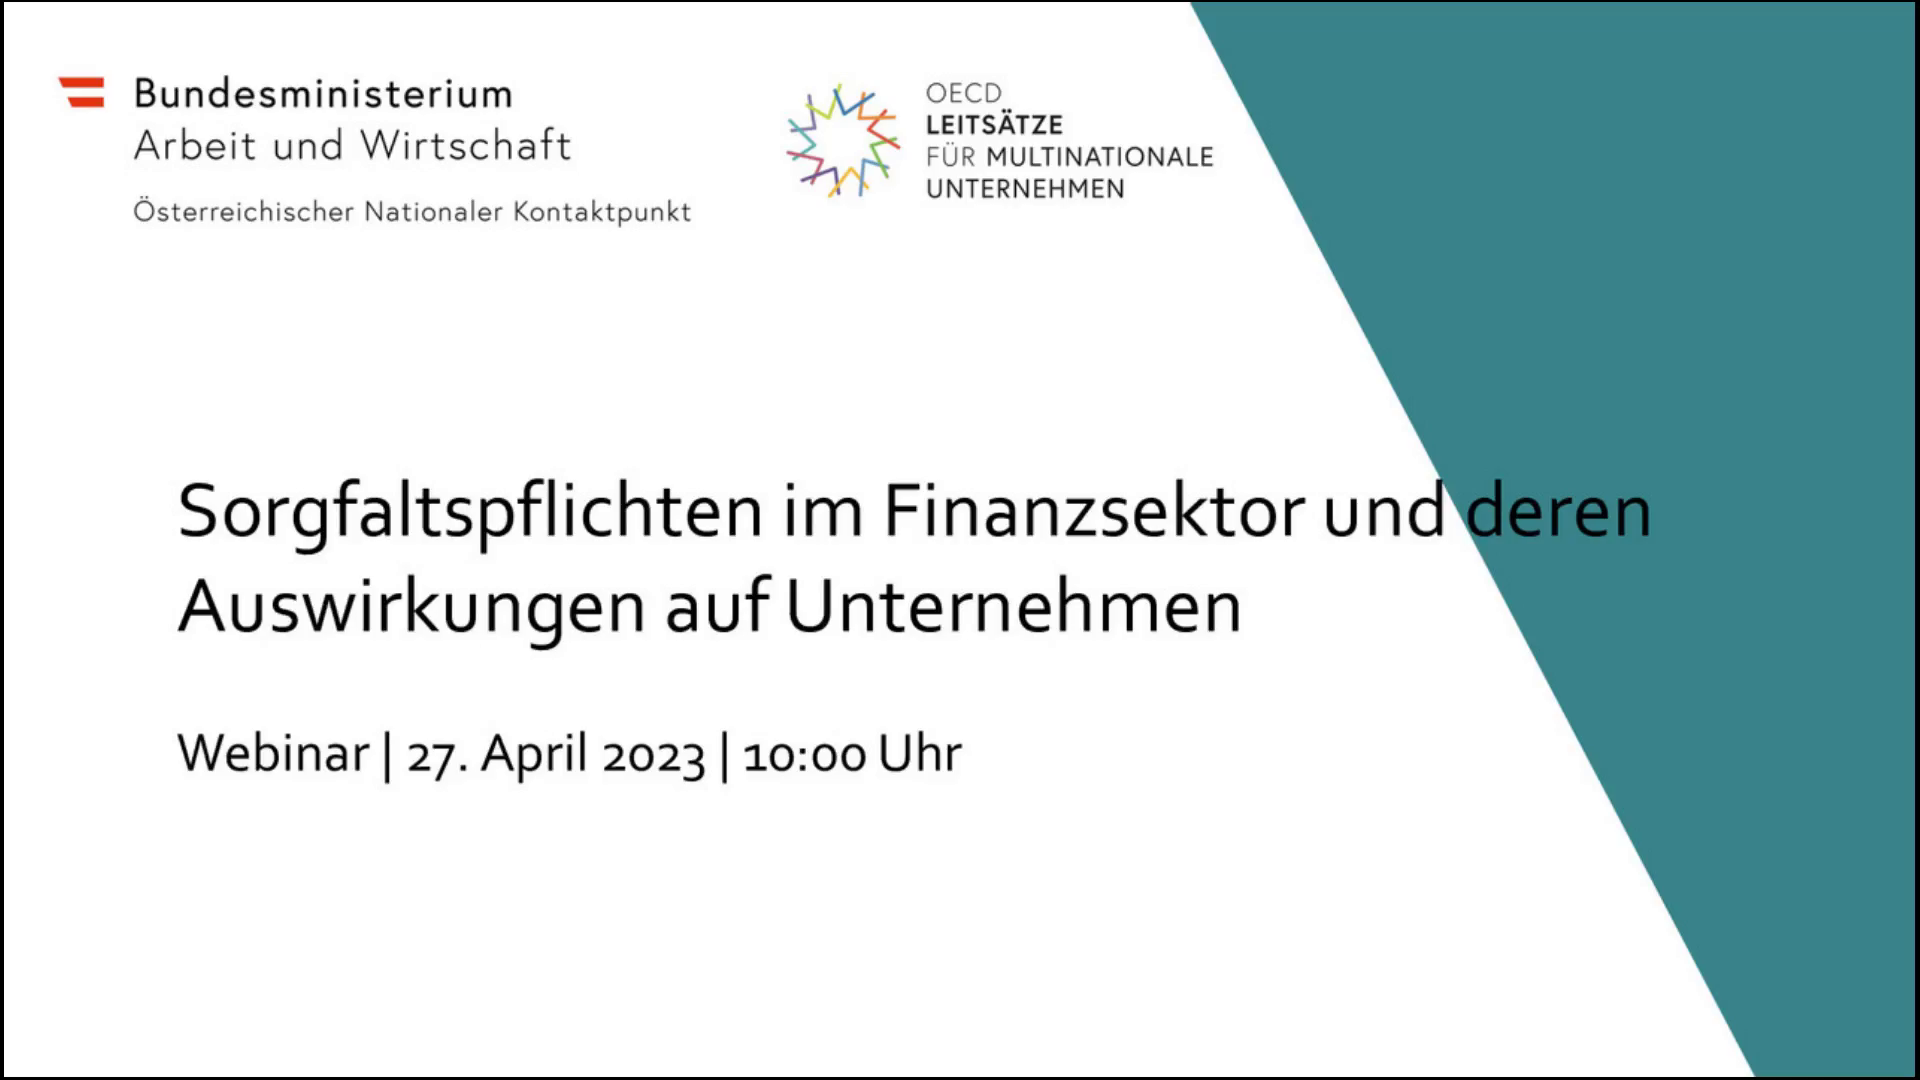 Webinar vom 27.04.2023: Sorgfaltspflichten im Finanzsektor und deren Auswirkungen auf Unternehmen